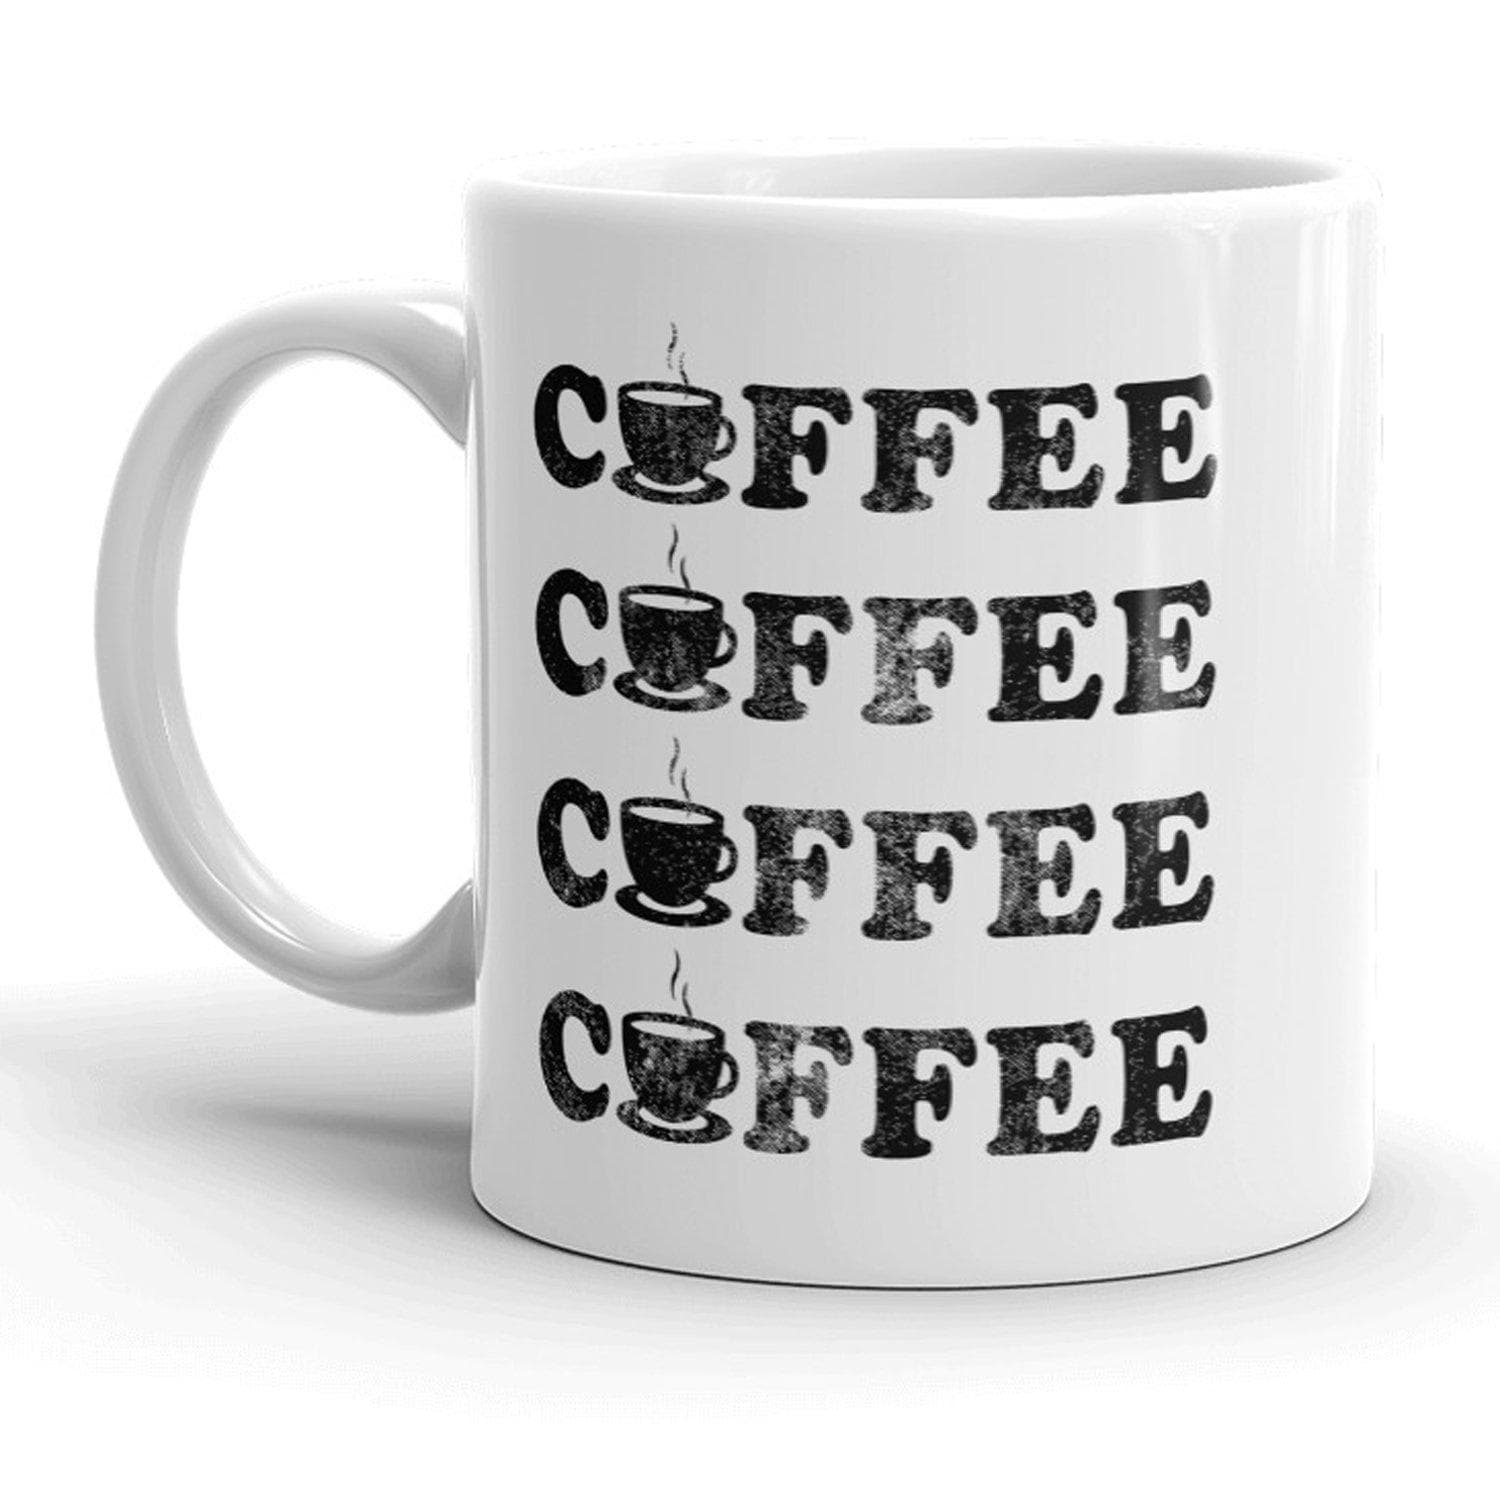 Coffee Coffee Coffee Coffee Mug - Crazy Dog T-Shirts